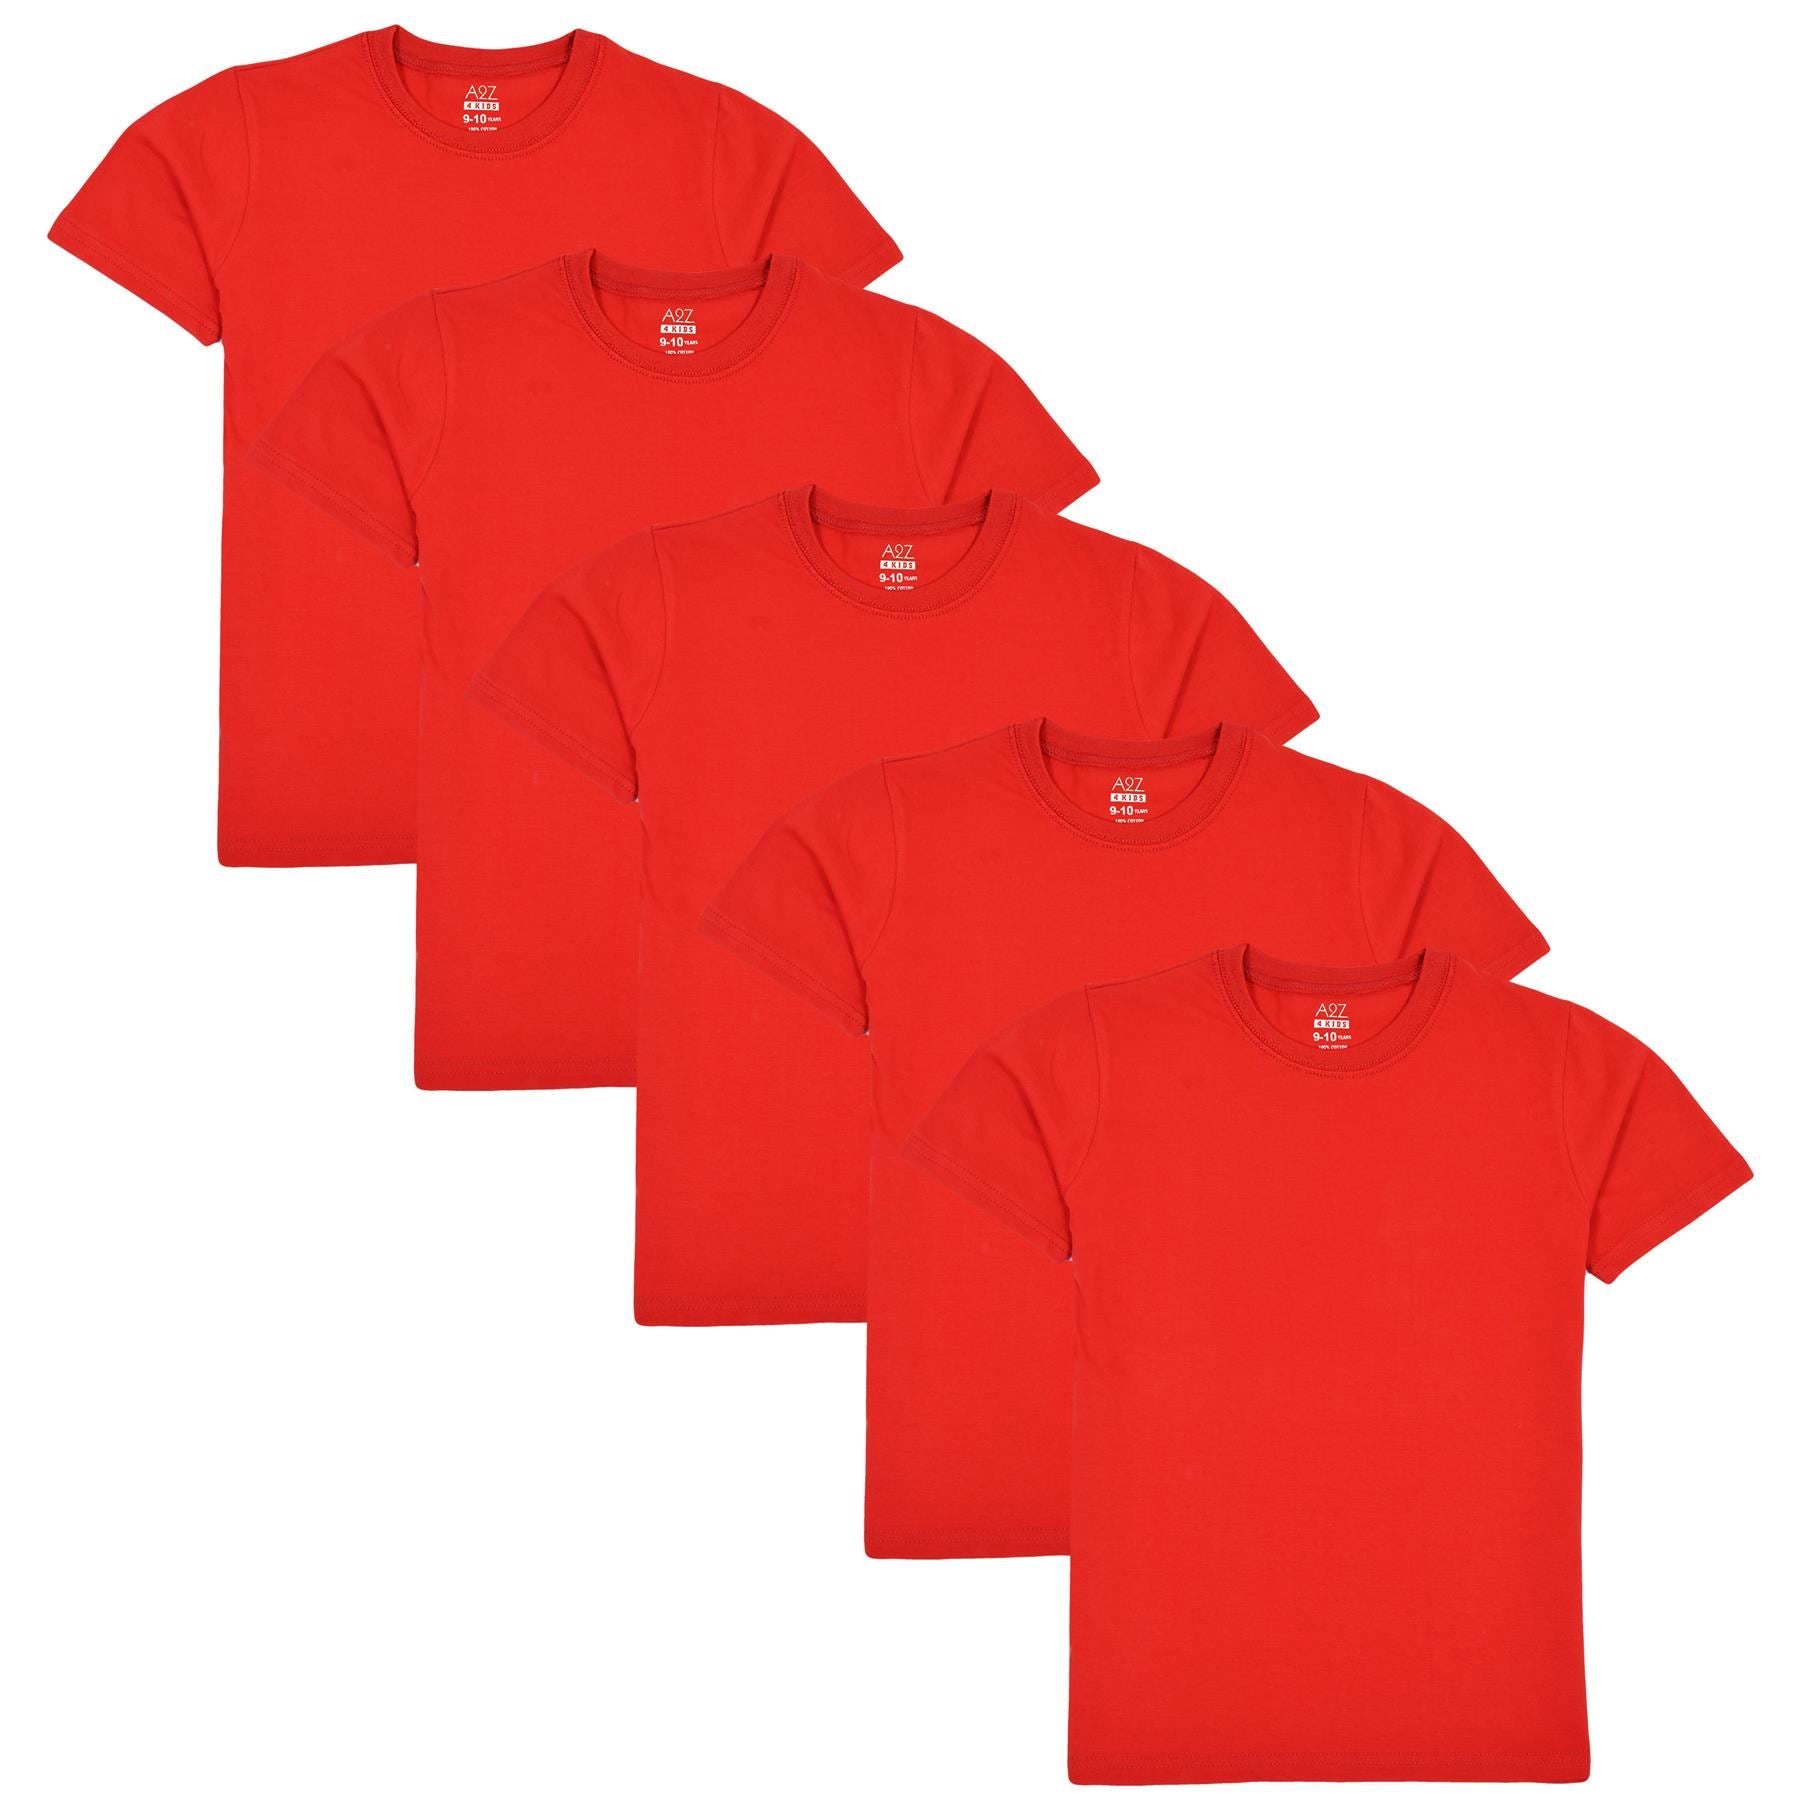 Girls Boys Pack Of 5 Plain PE School T Shirts Lightweight Summer Soft Feel Top